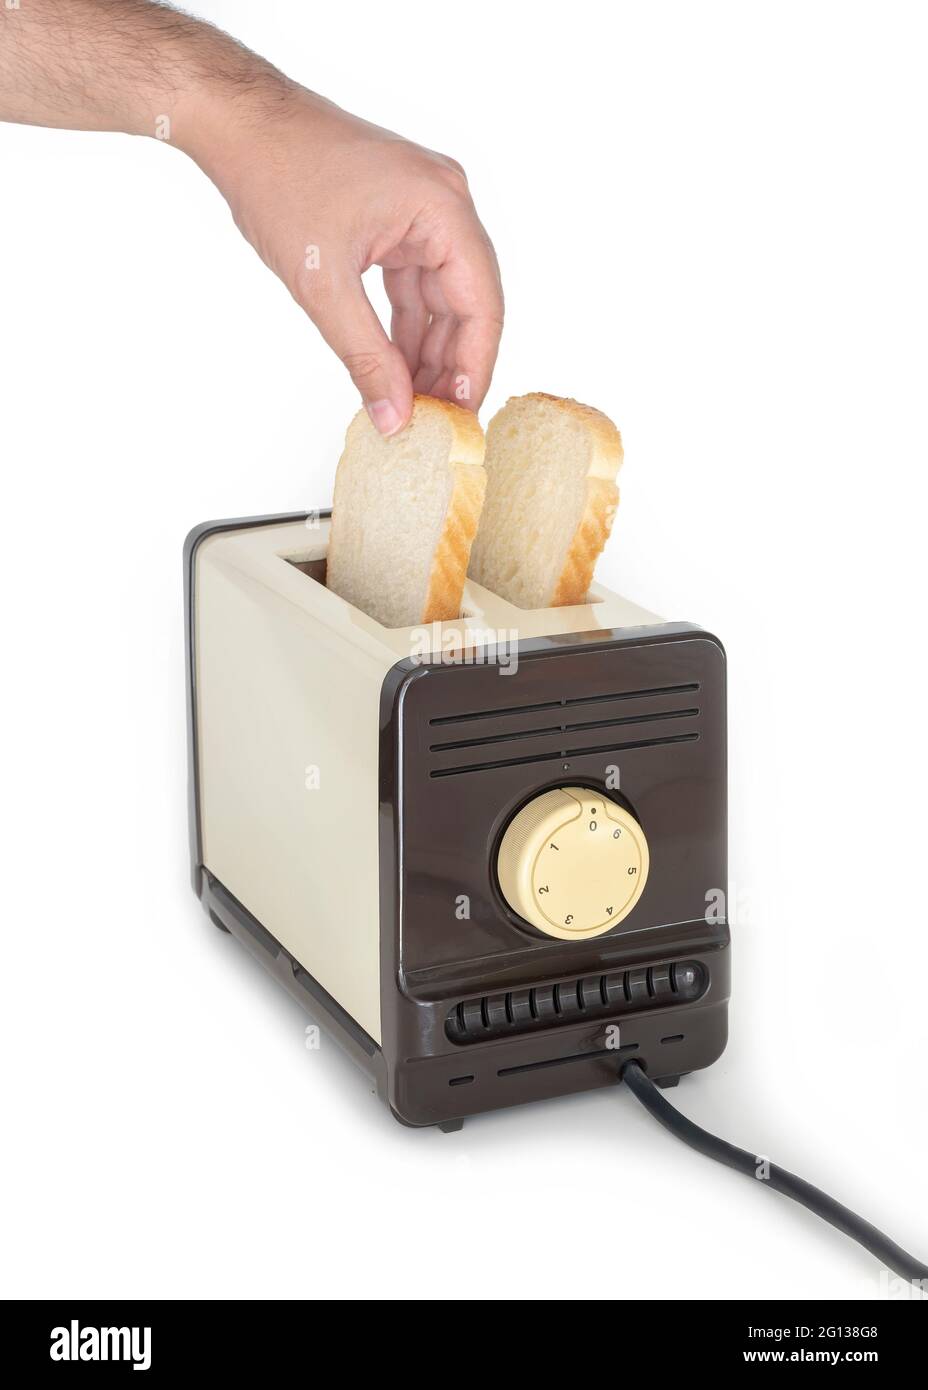 Mani maschili che mettono il pane in tostapane, isolato su sfondo bianco Foto Stock